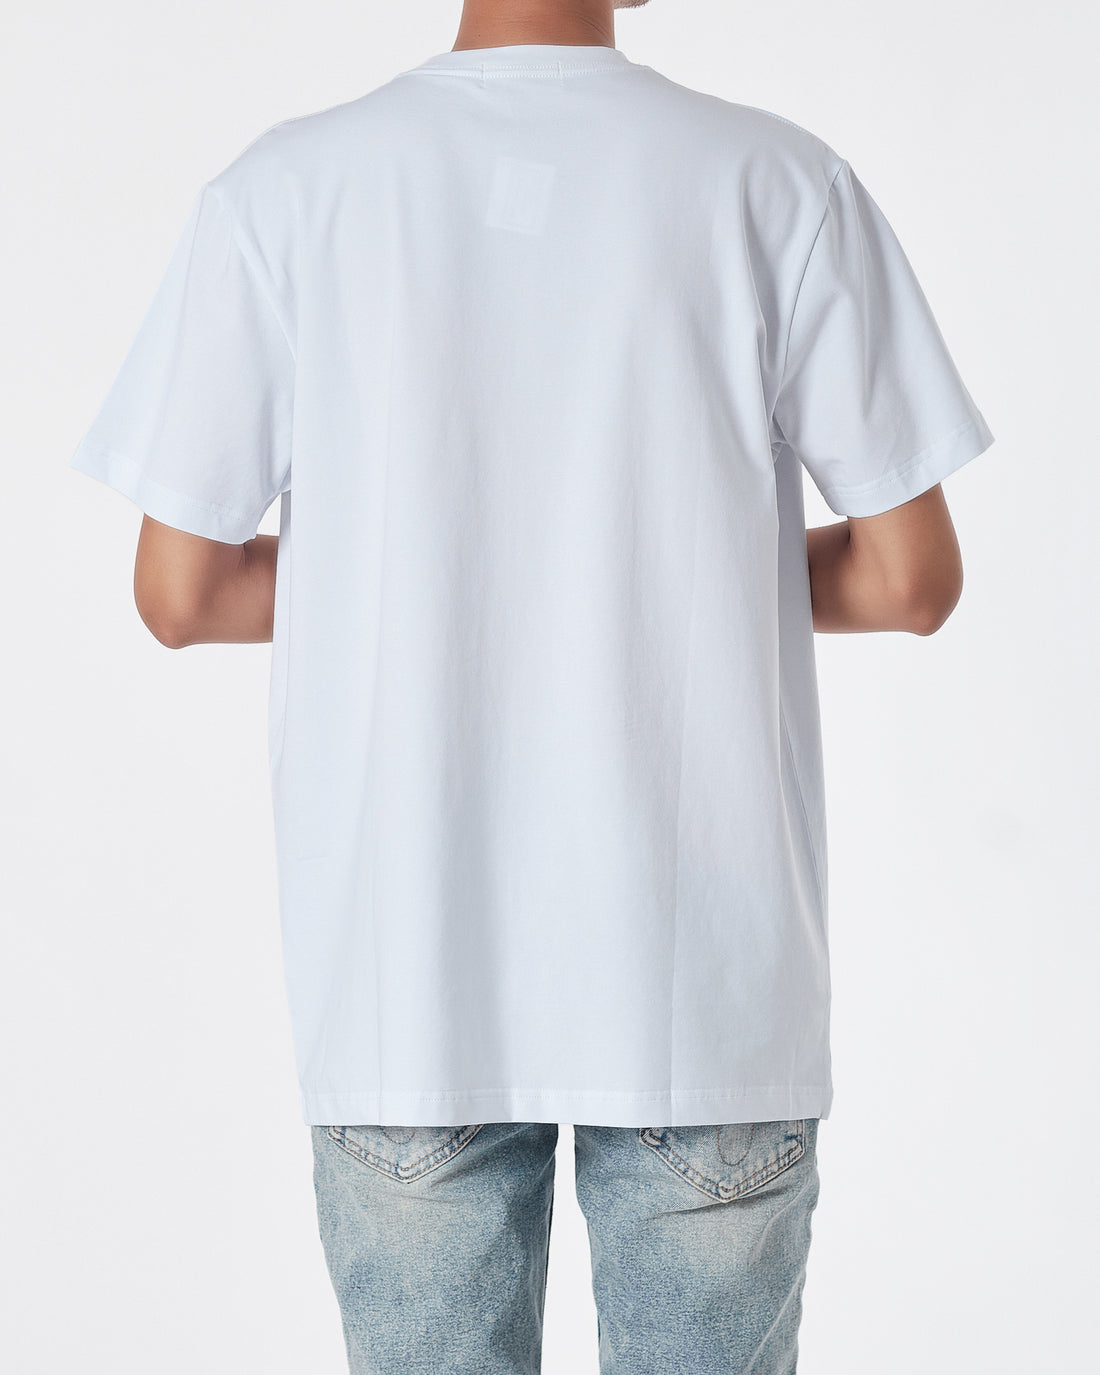 MKI Fox Embroidered Men White T-Shirt 14.90